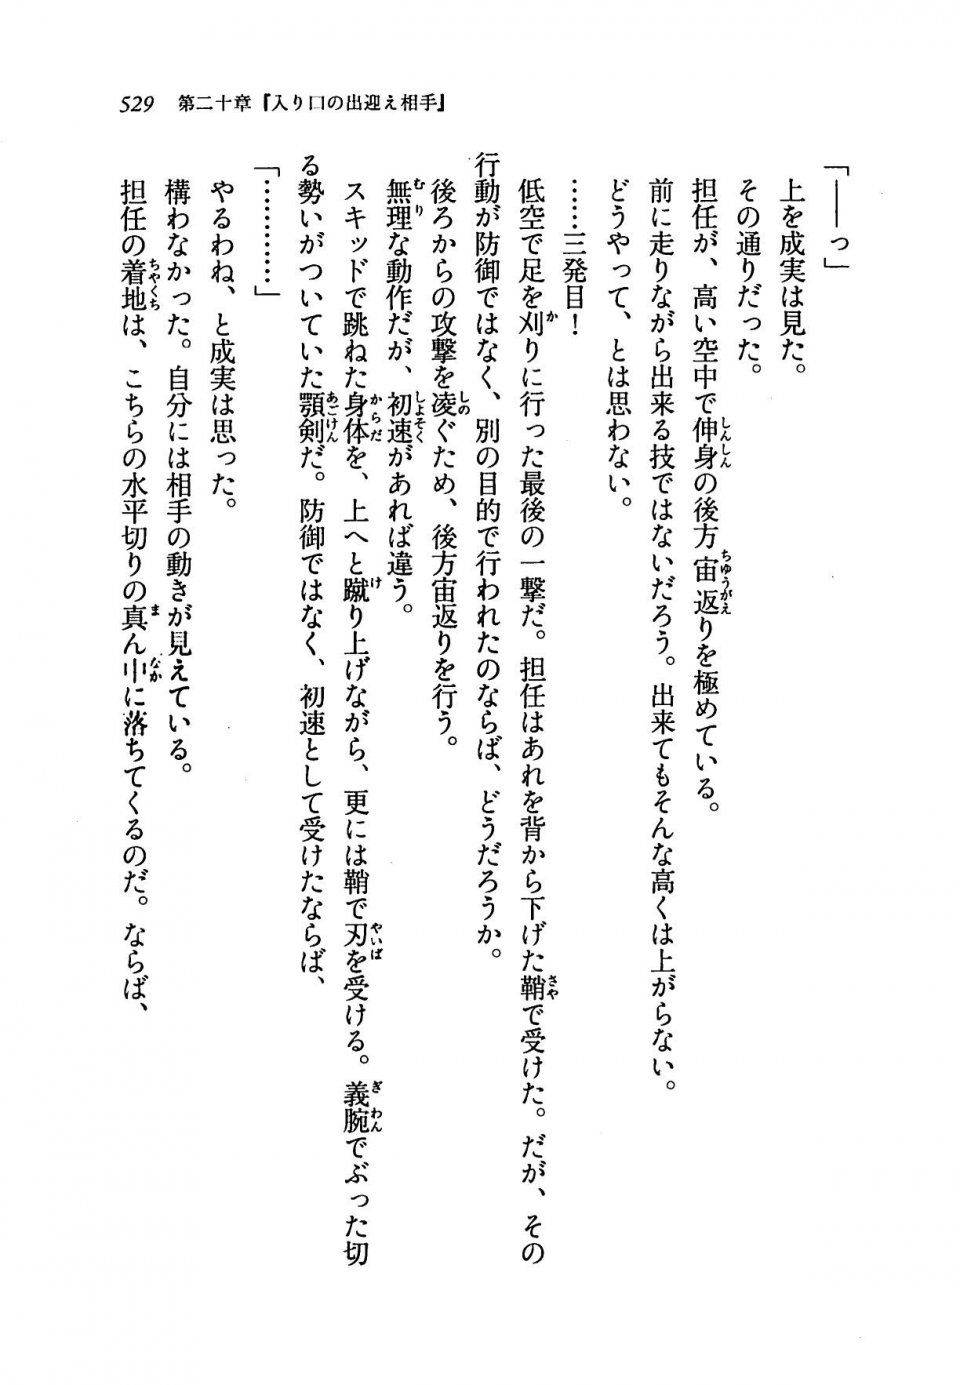 Kyoukai Senjou no Horizon LN Vol 19(8A) - Photo #529